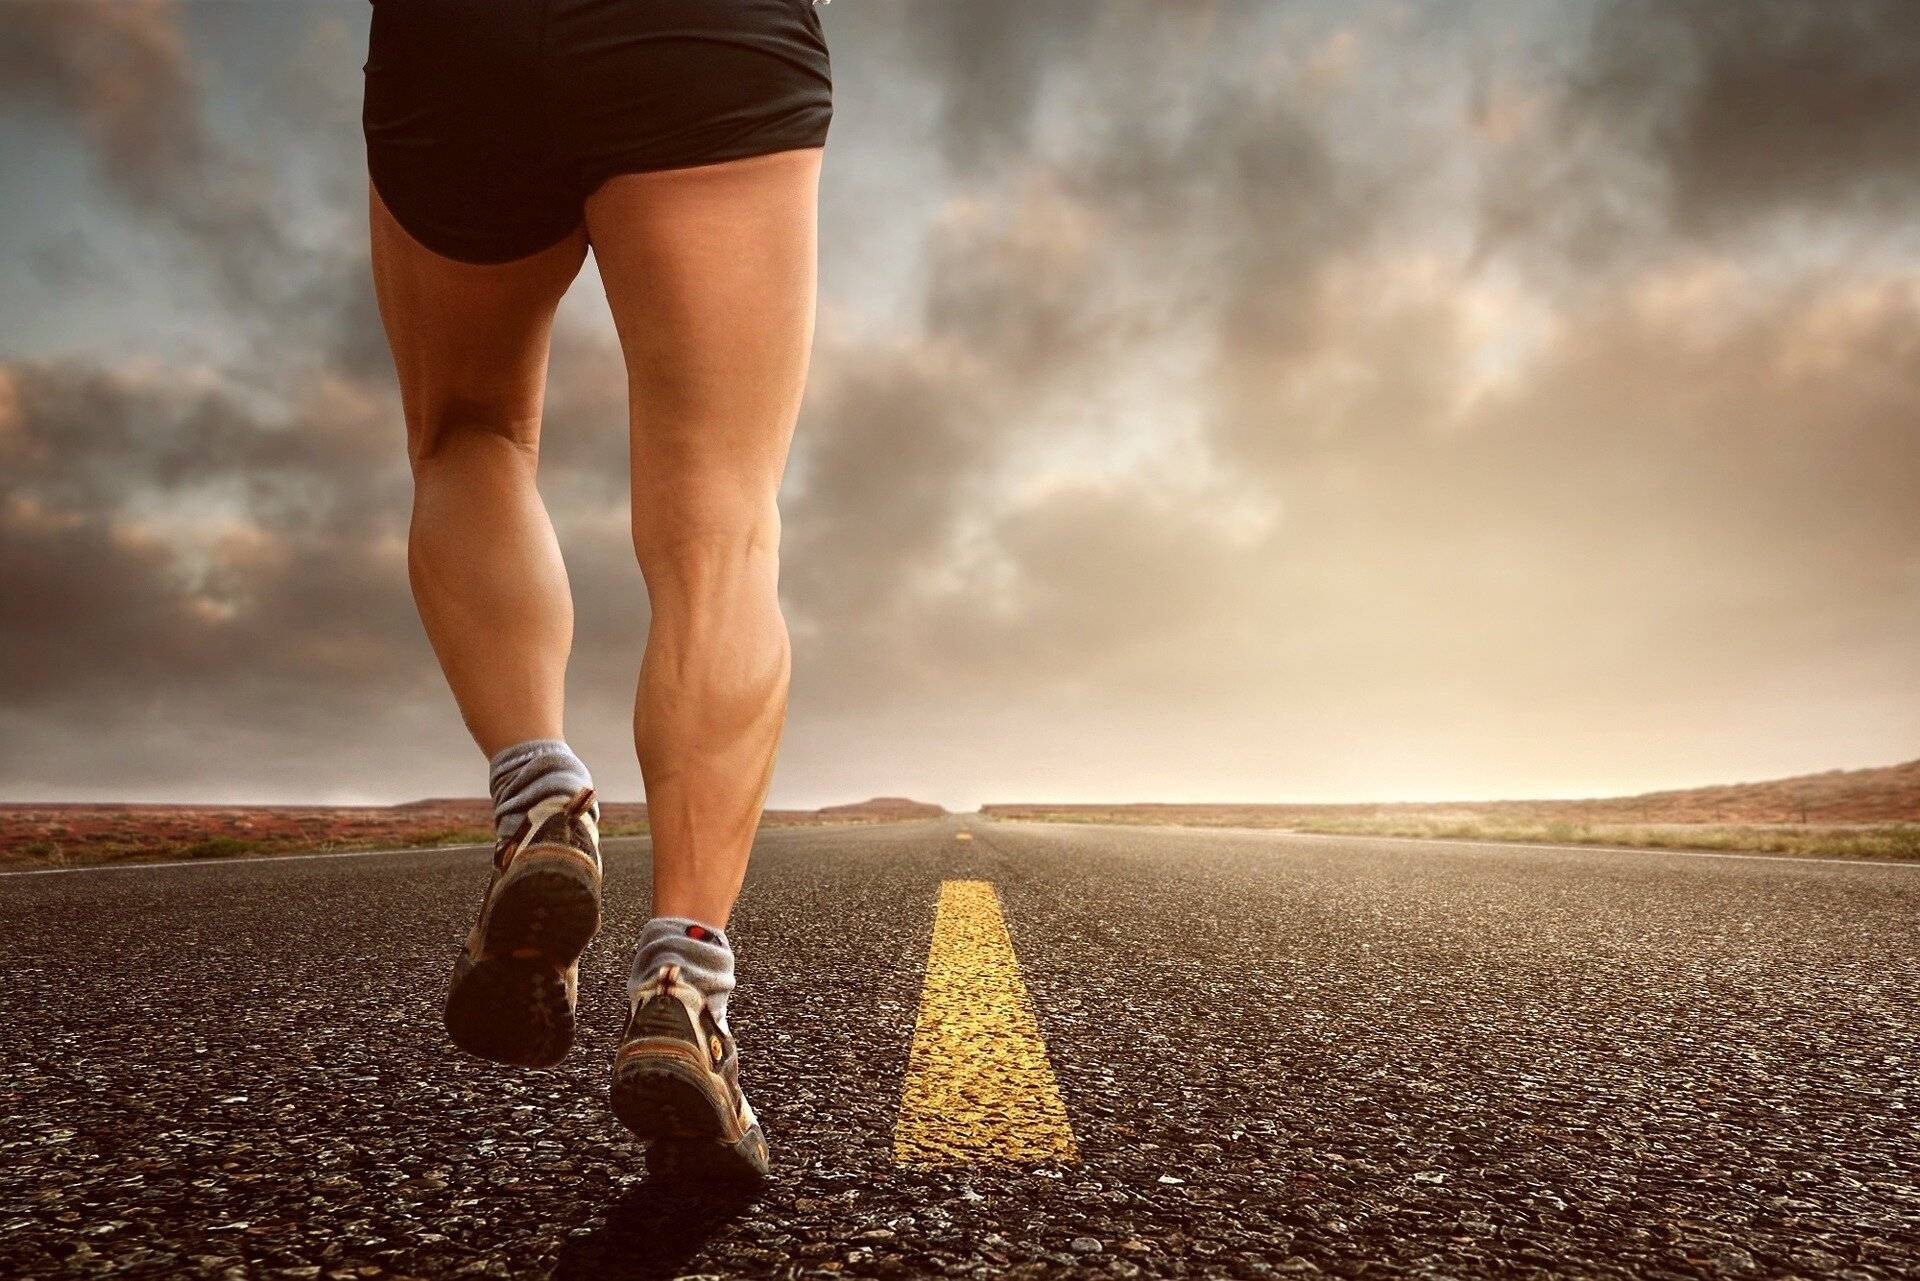 Laufen in MBT-Schuhen: Schicke Gesundheitsschuhe mit großem Nutzen